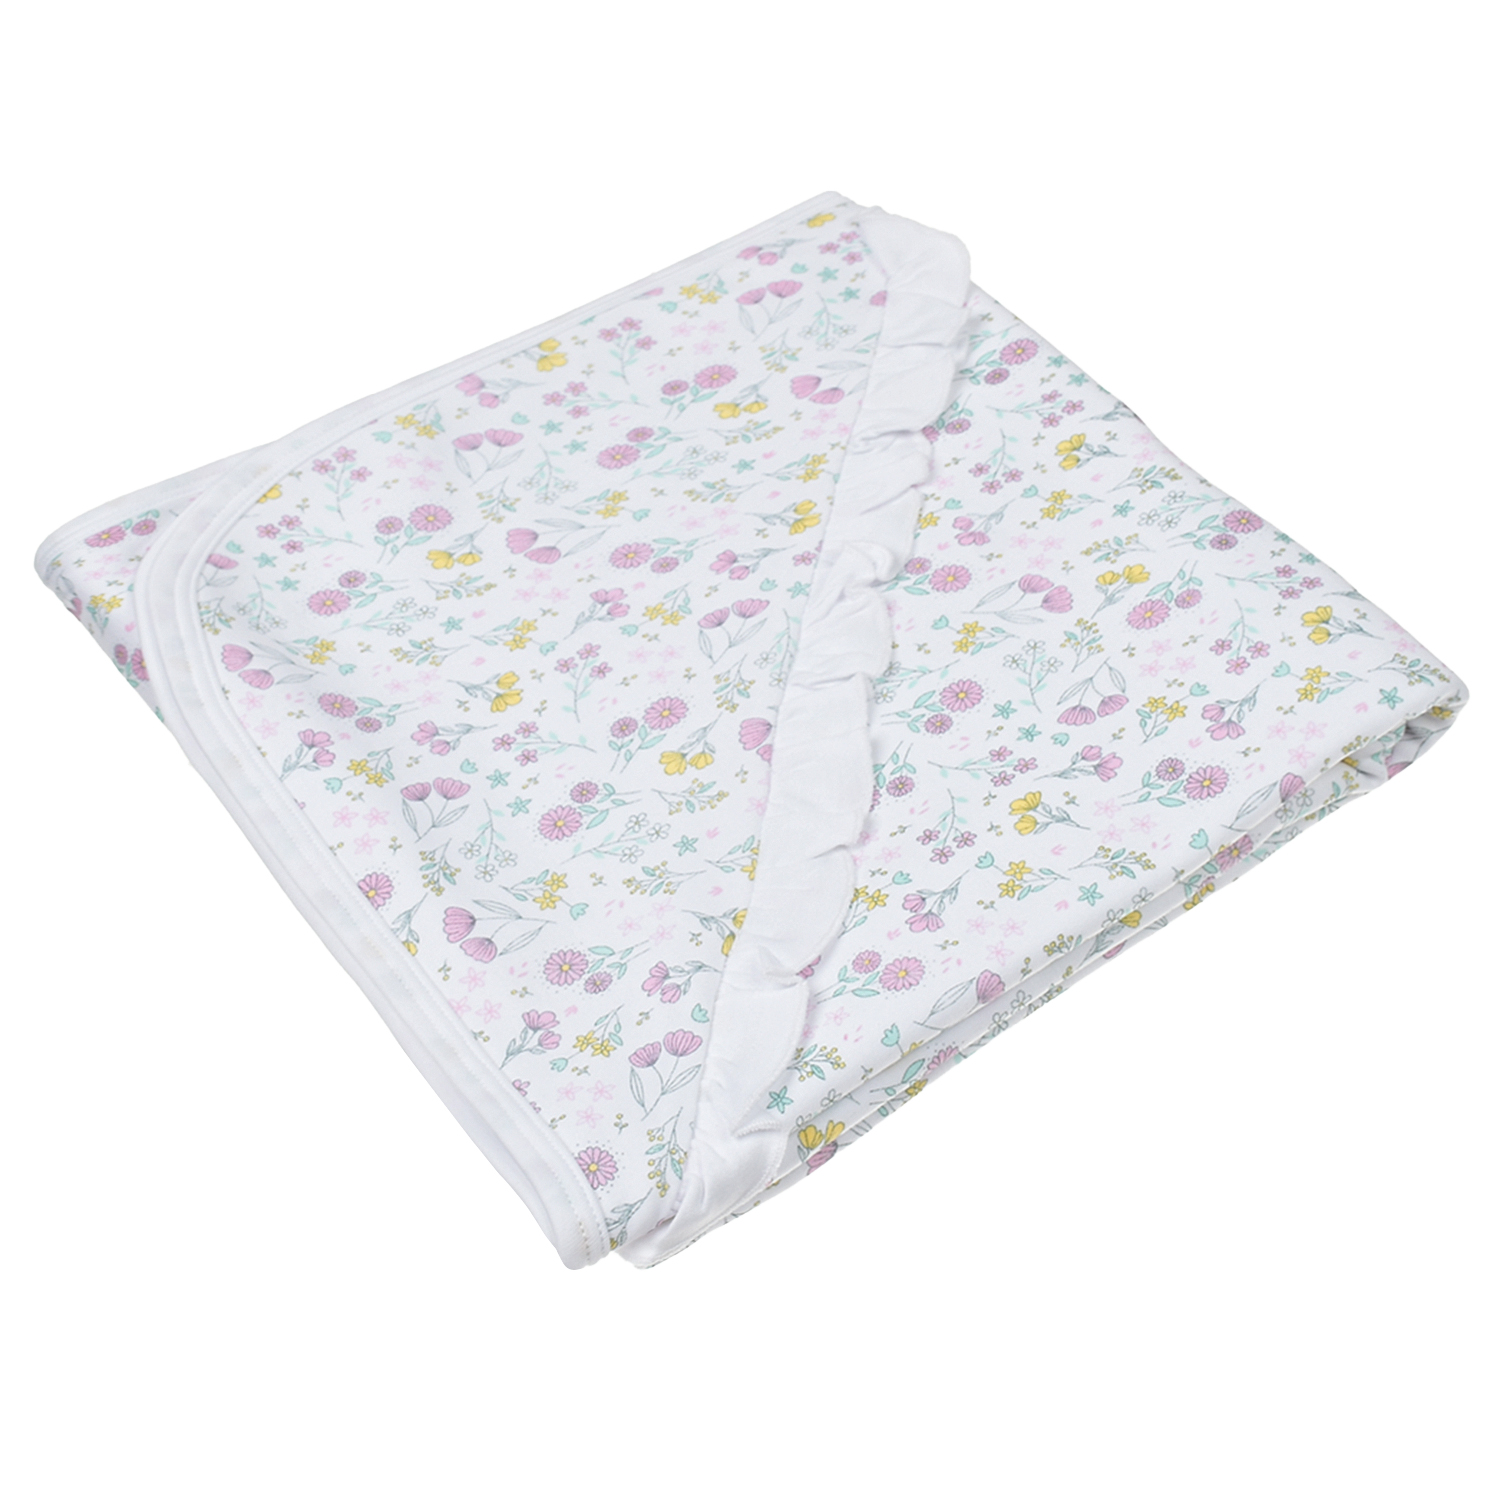 Одеяло с цветочным принтом Lyda Baby, размер unica - фото 1